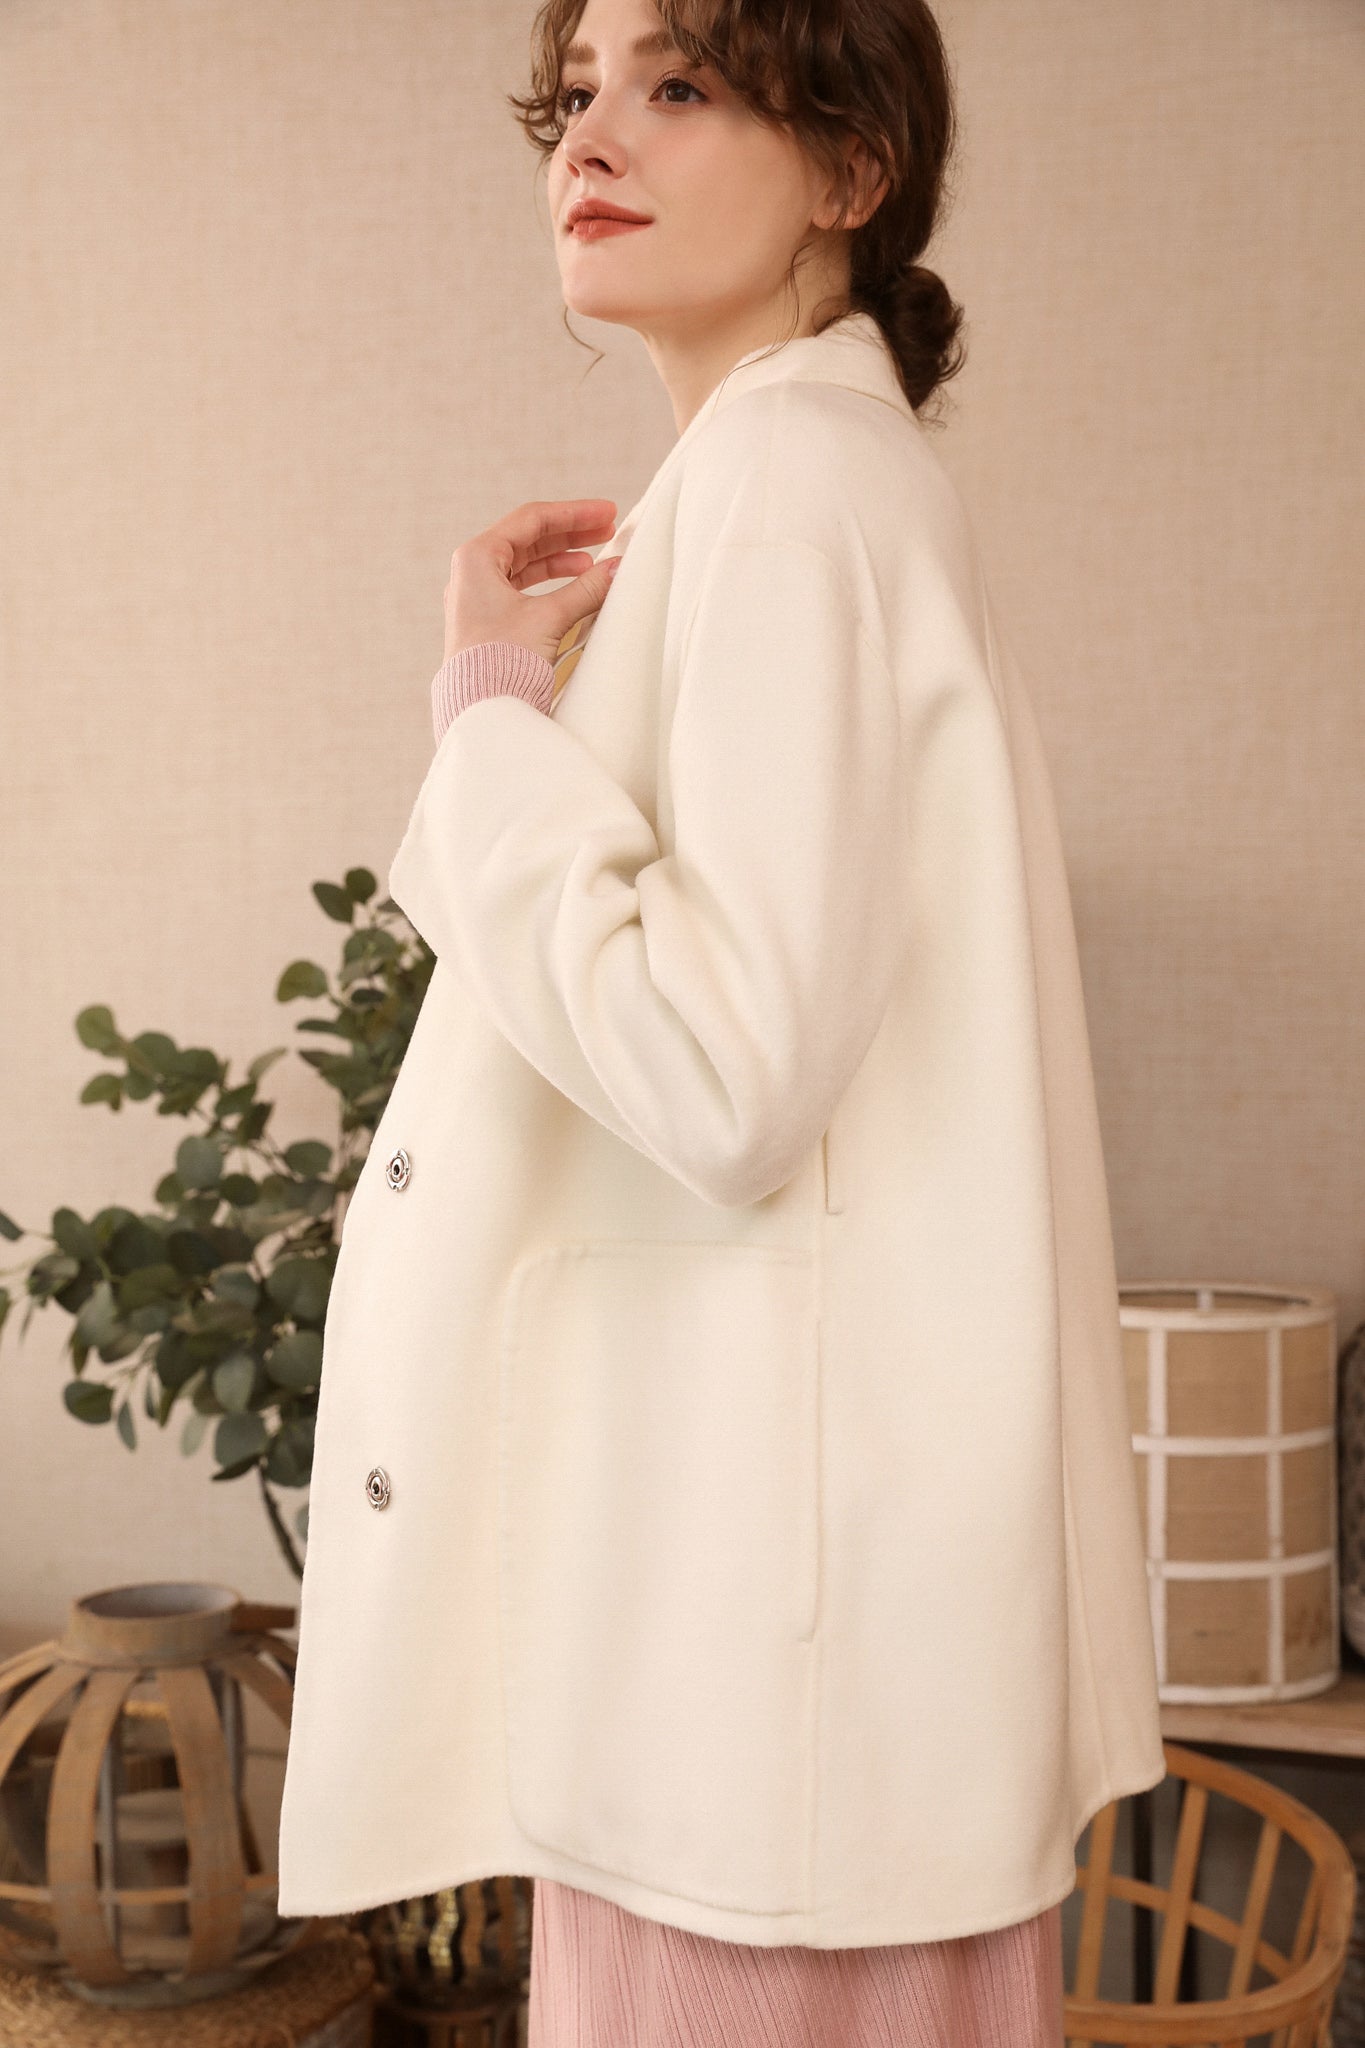 Fangyan | Alienor White Belted Wool Coat